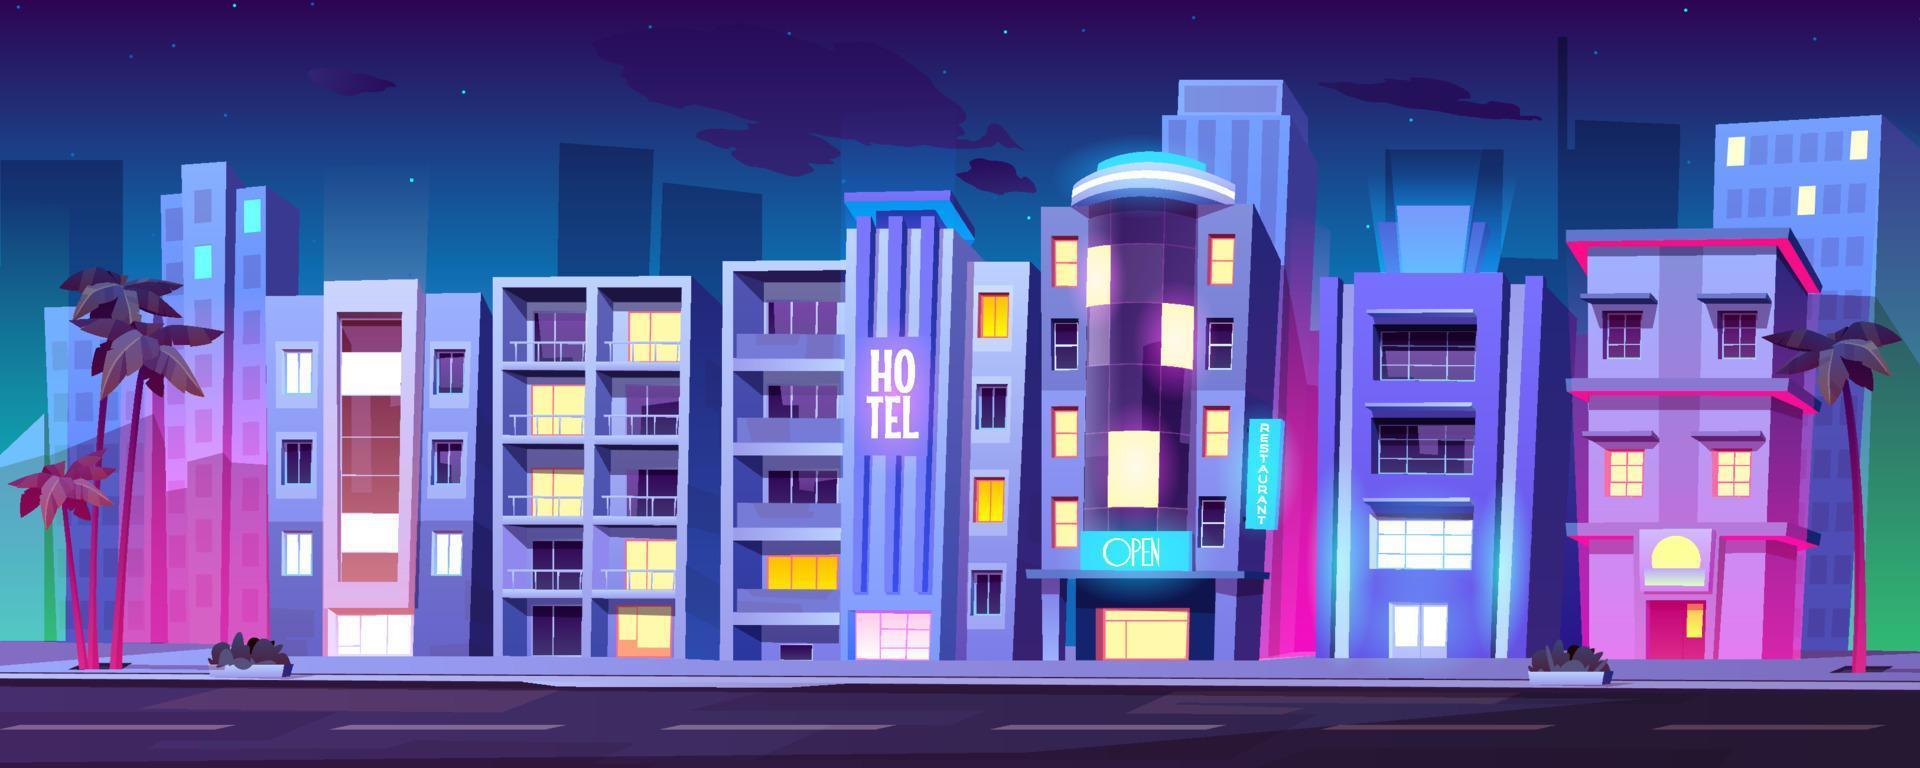 edificios, hoteles en miami en la noche de verano, vector